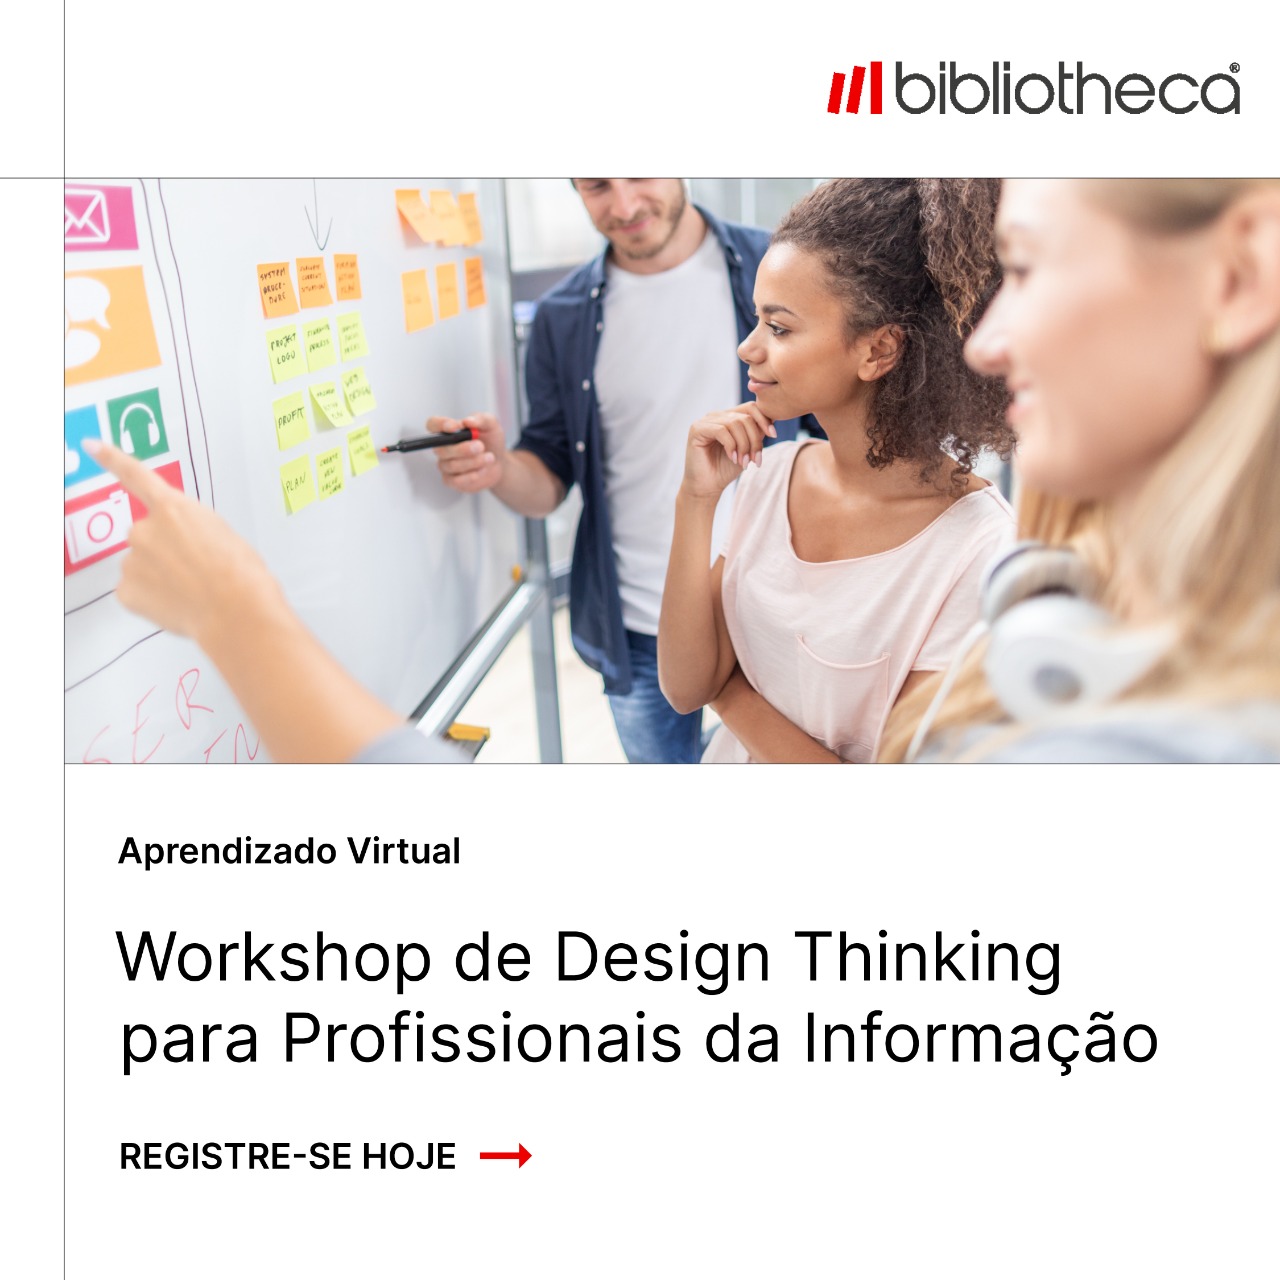 Workshop de Design Thinking para Profissionais da Informação